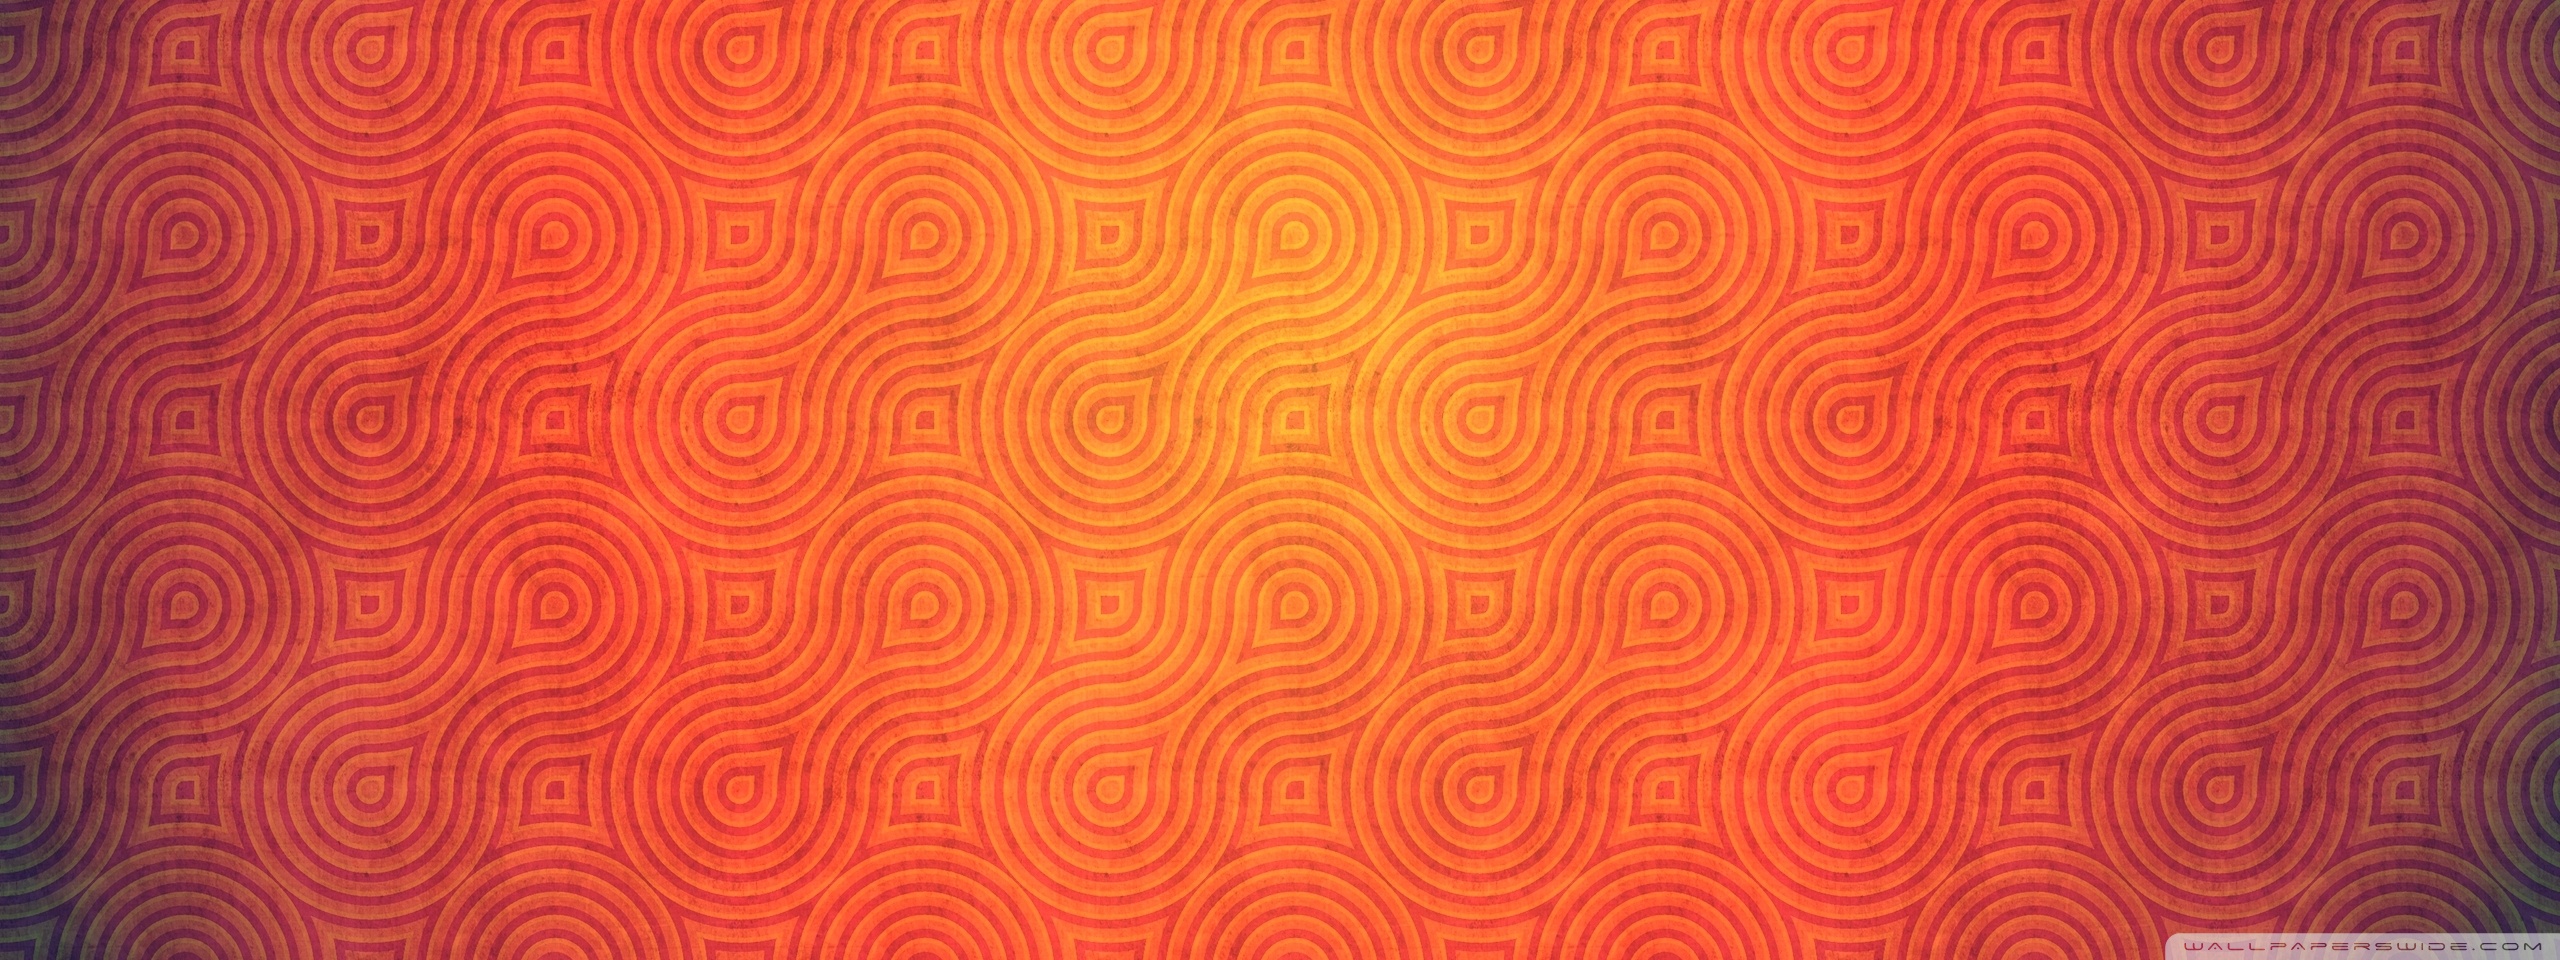 Orange Textured Wallpapers